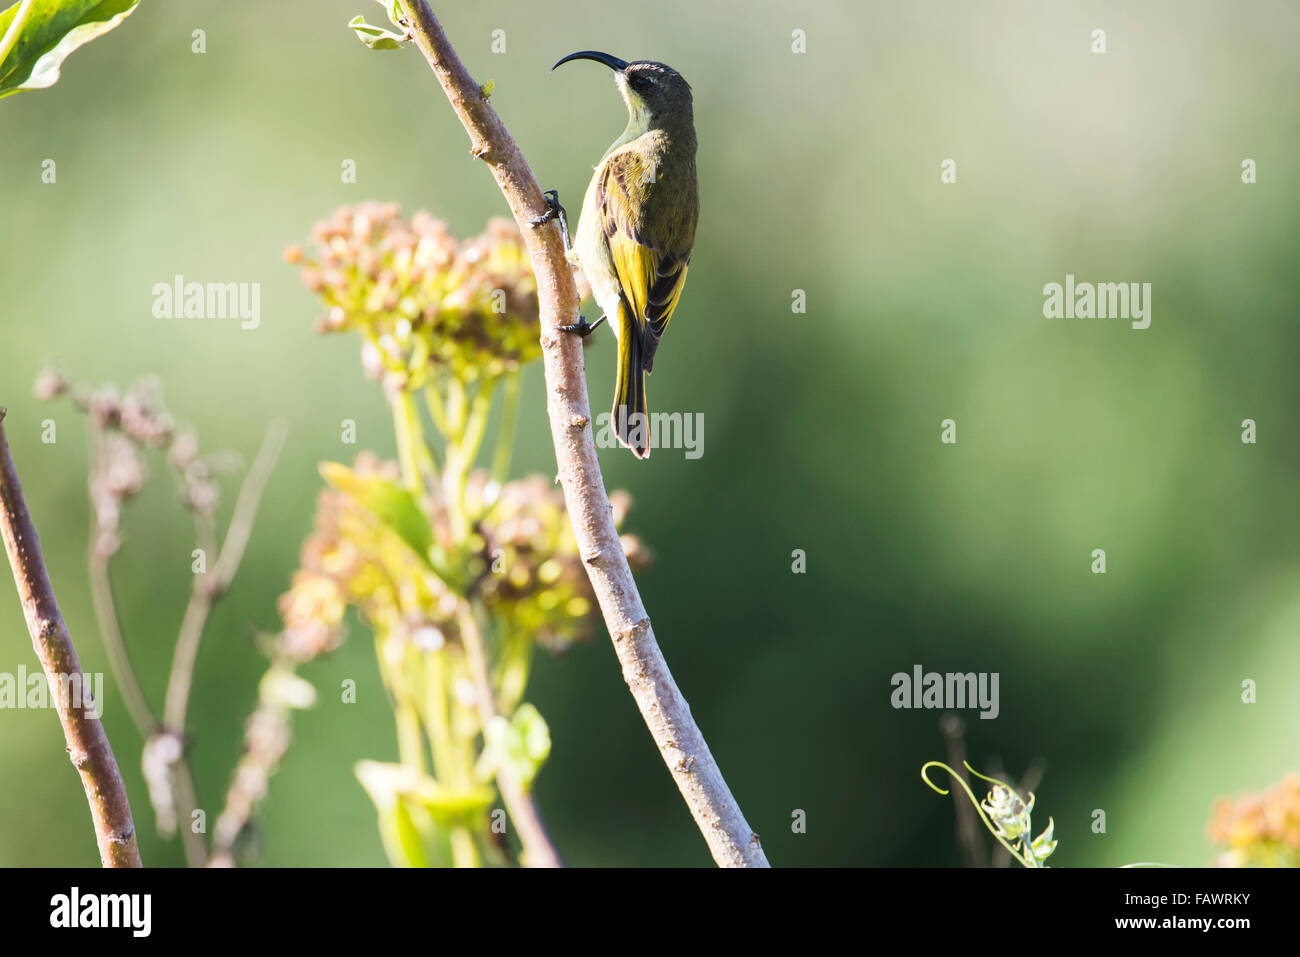 Golden-winged Sunbird (Nectarinia reichenowi), Ngorongoro Crater; Tanzania Stock Photo